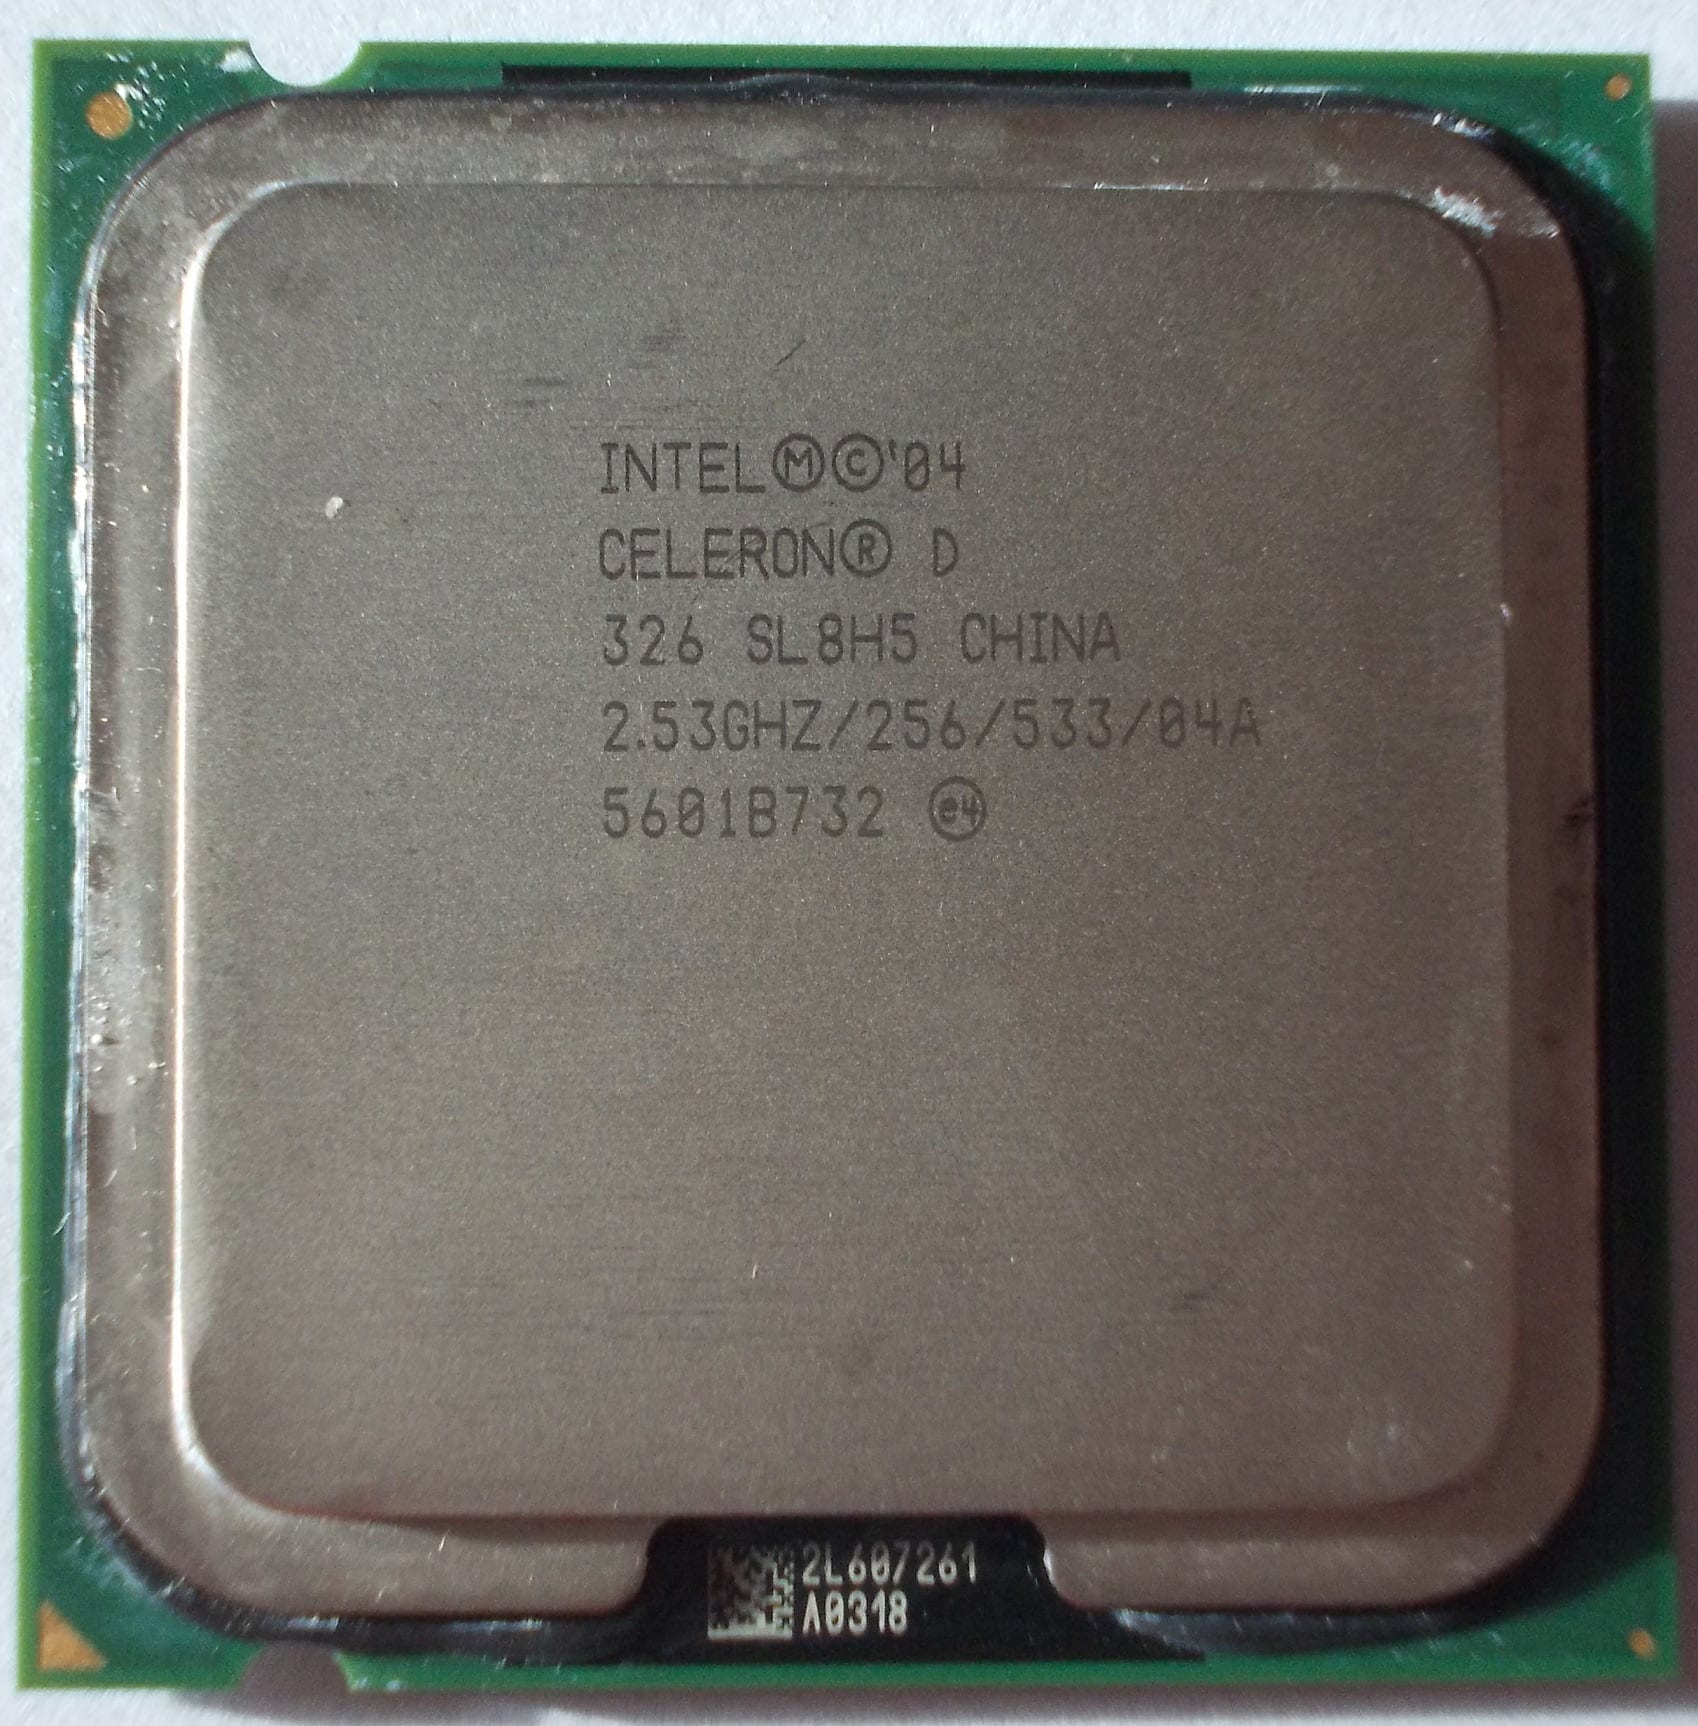 Интел селерон характеристики. Intel 04 Celeron d 326 sl98u. Intel Celeron d 2.8 GHZ 256 533 04a. Процессор Интел 86 Celeron. Celeron d 326 2.53GHZ характеристики.